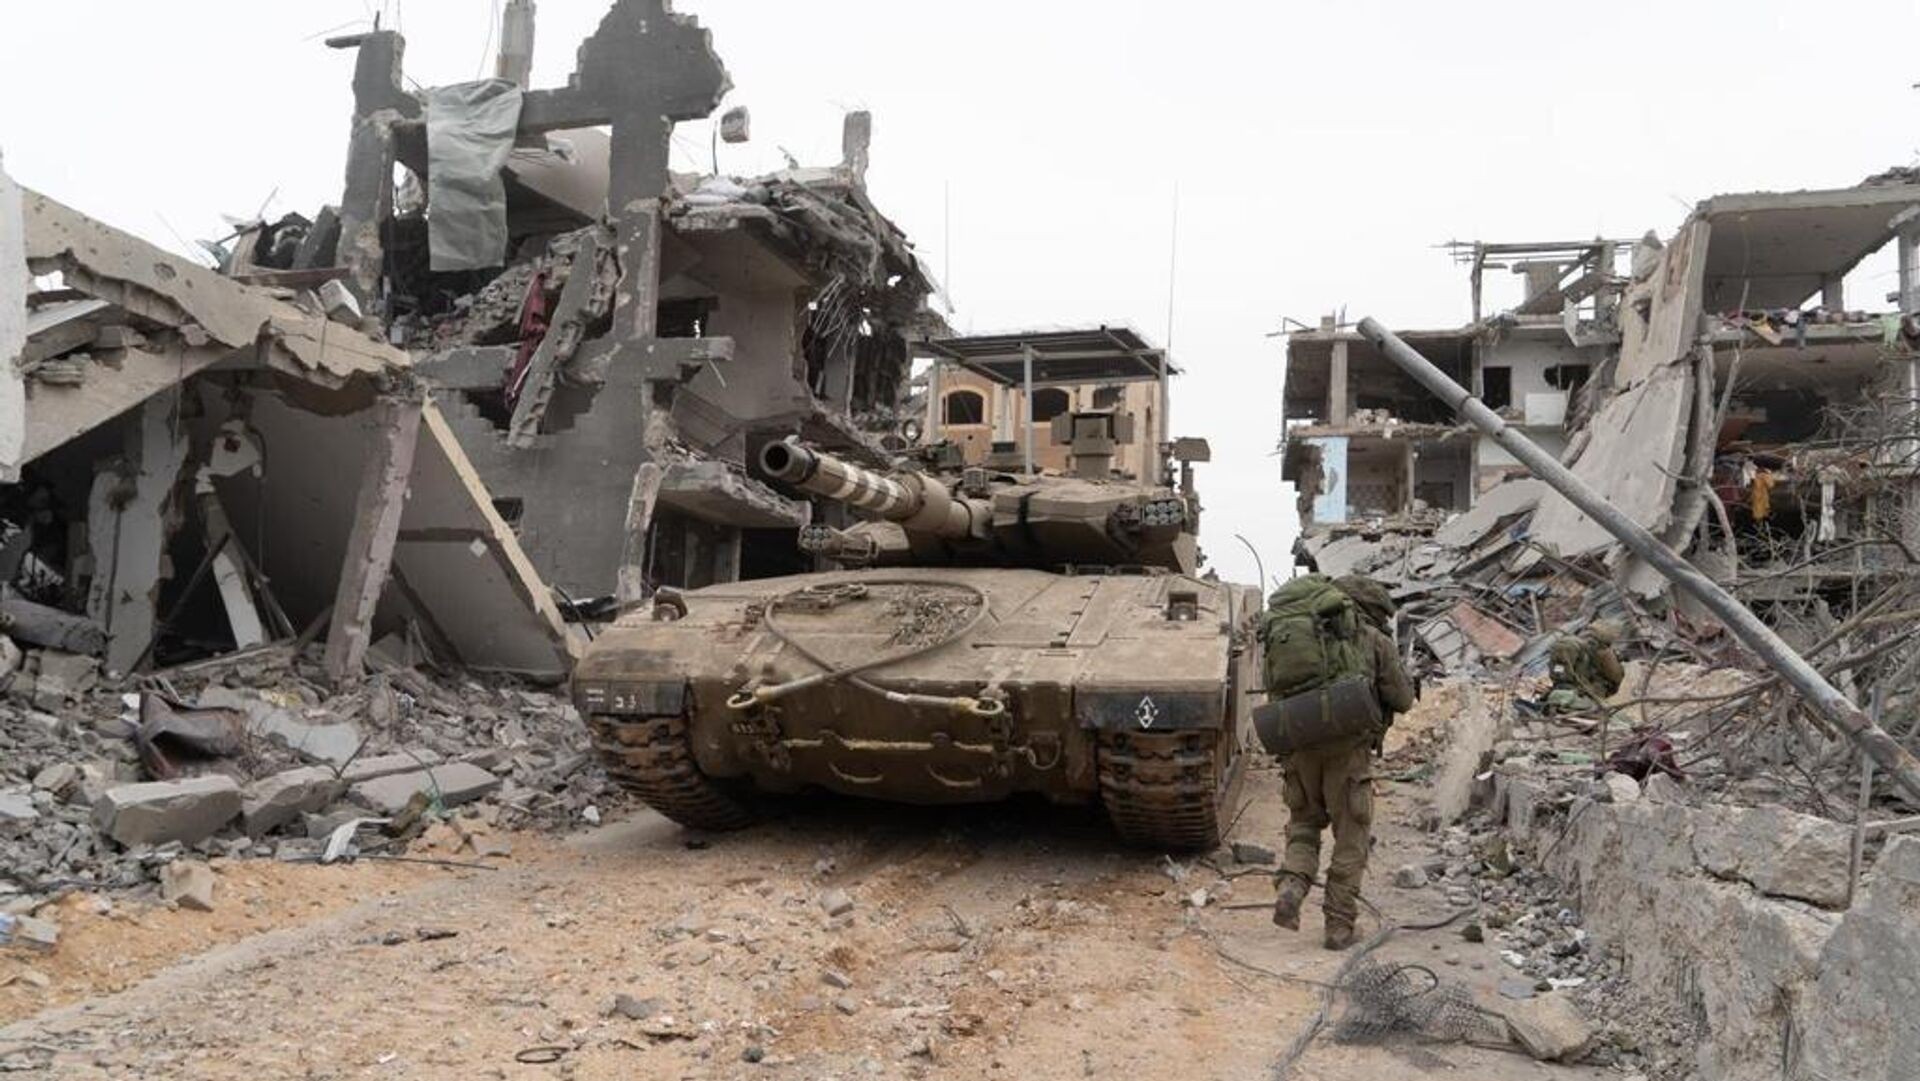 إسرائيل تنفق 17 مليار دولار في الحرب على قطاع غزة مقابل 2.4 مليون دولار للمقاومة